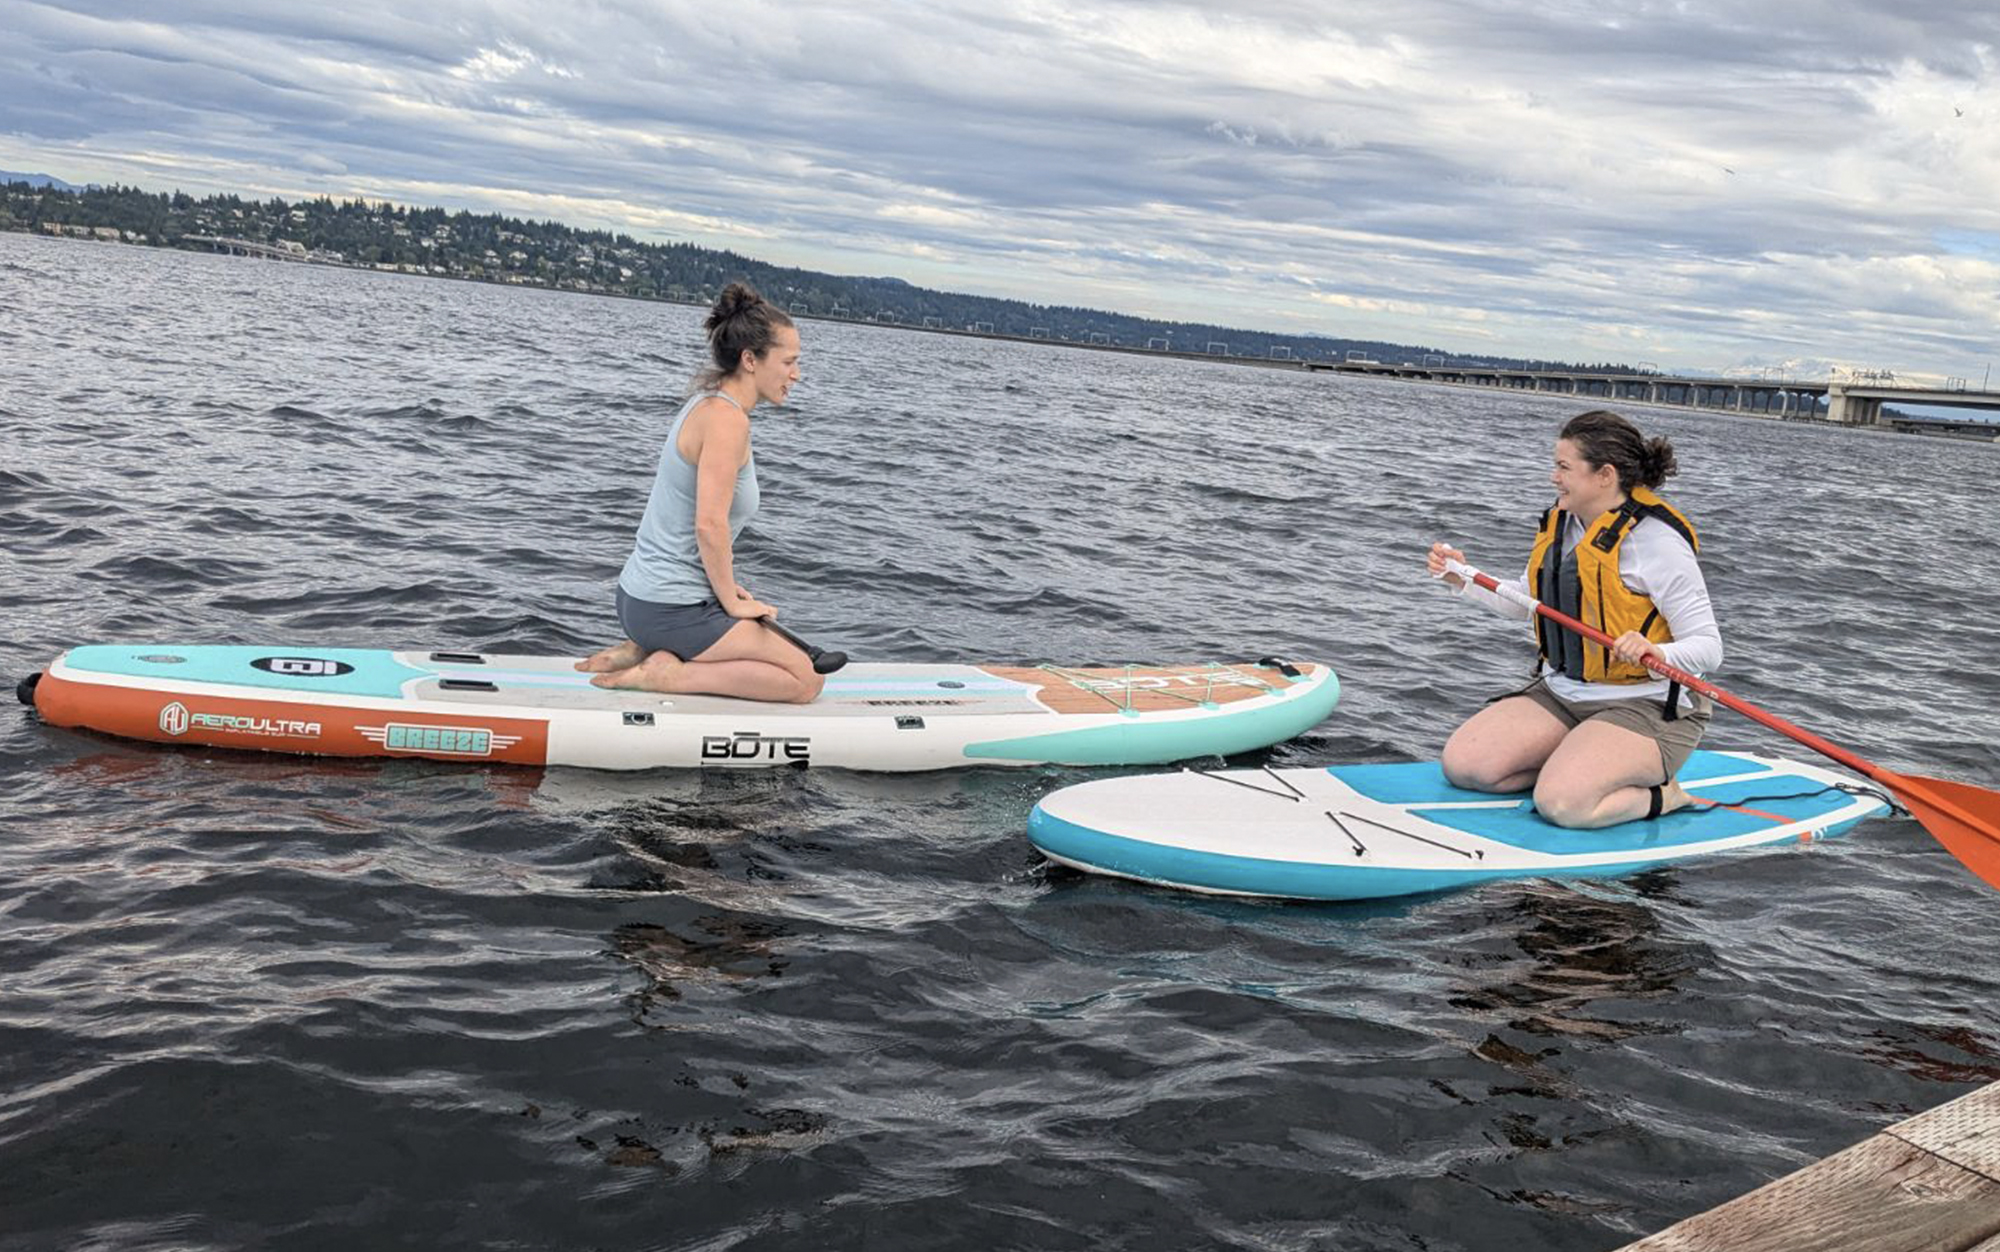 Testing two paddleboards on Lake Washington